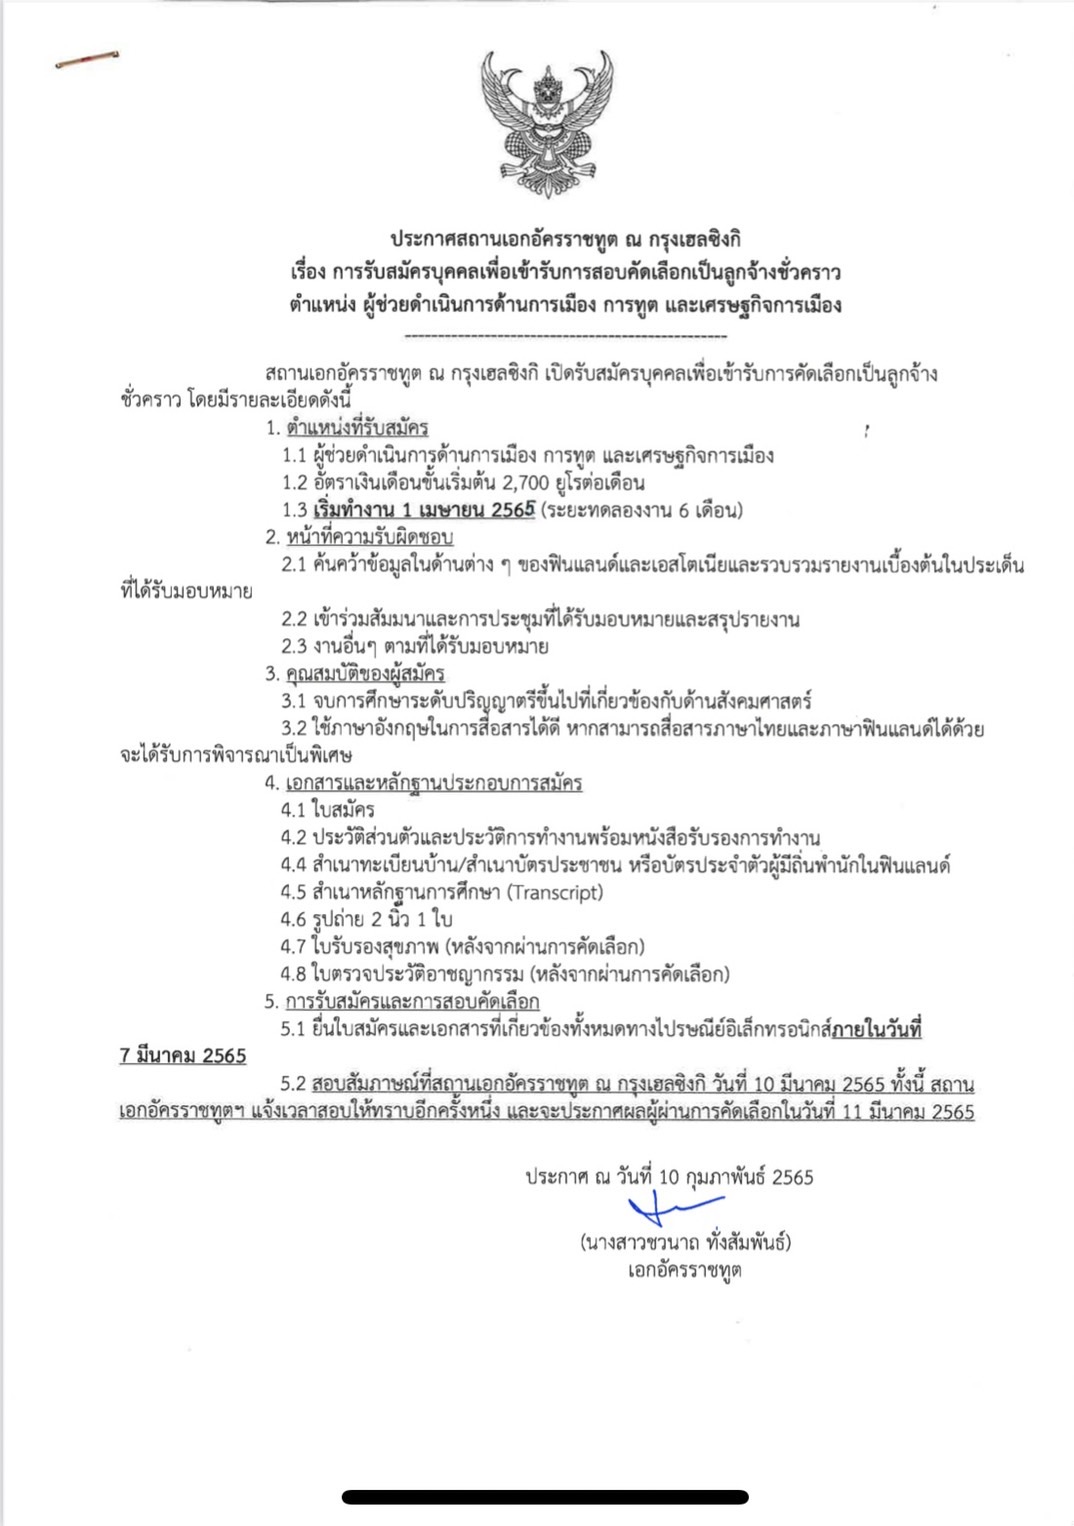 Edit_Thai_Announcement_Politic_Economic